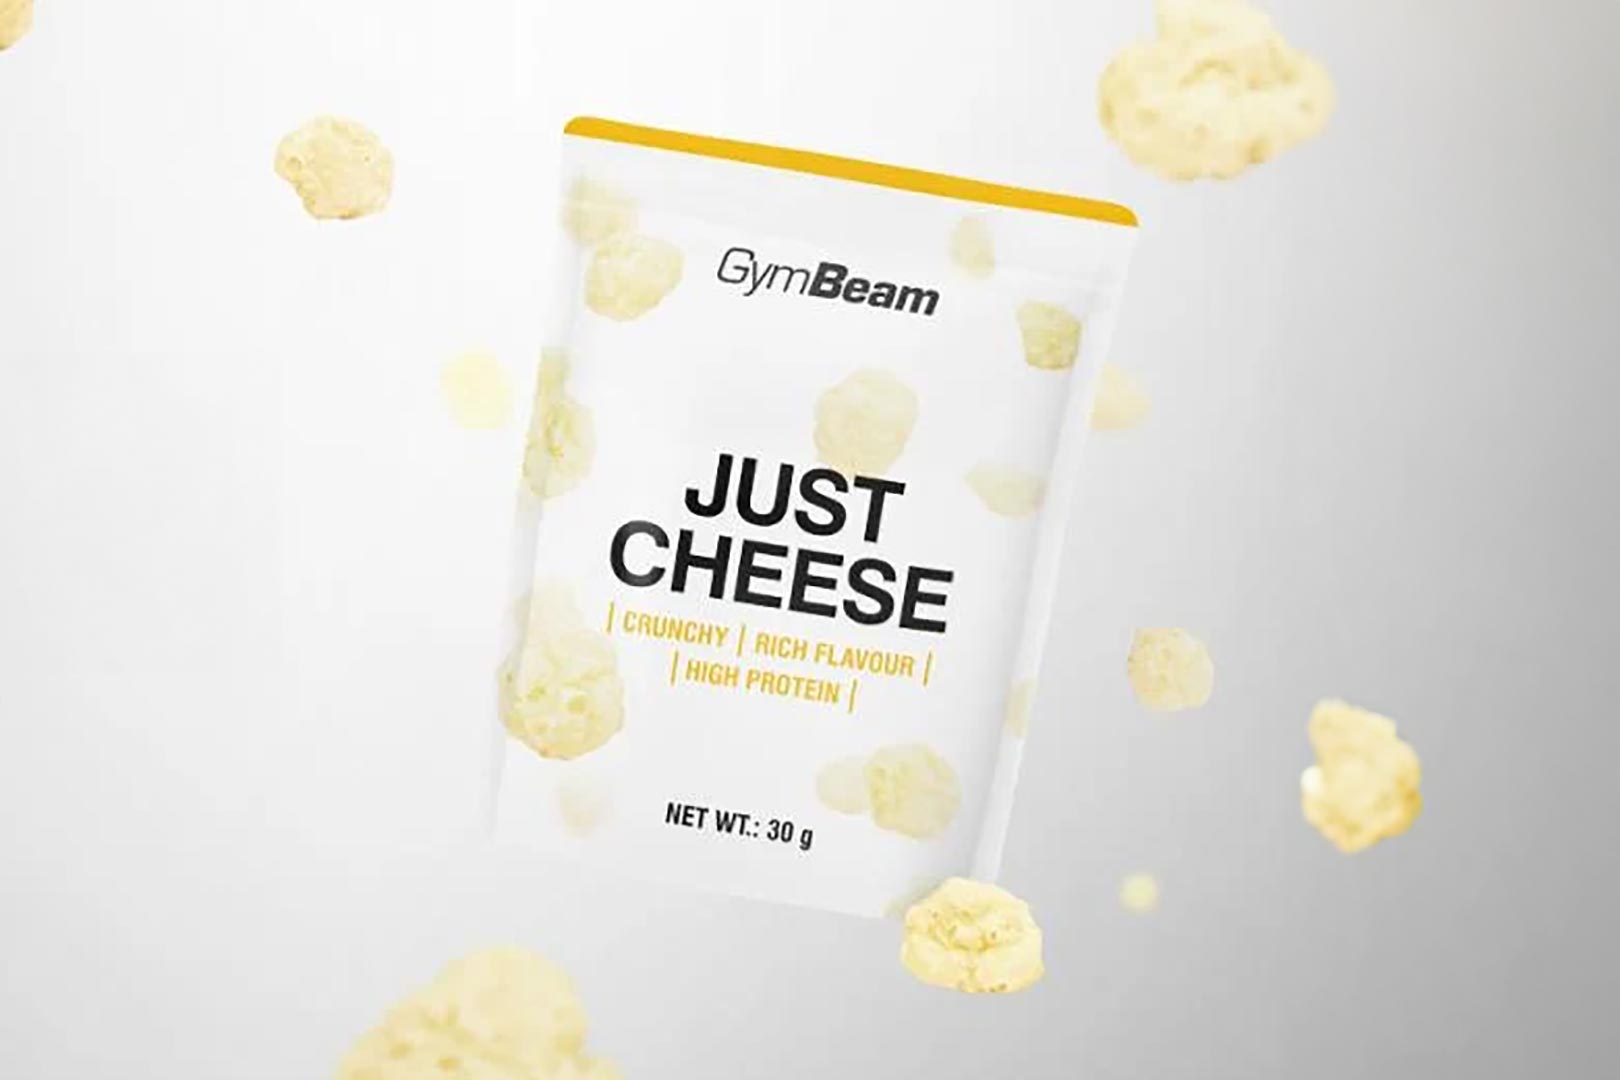 Gymbeam Just Cheese